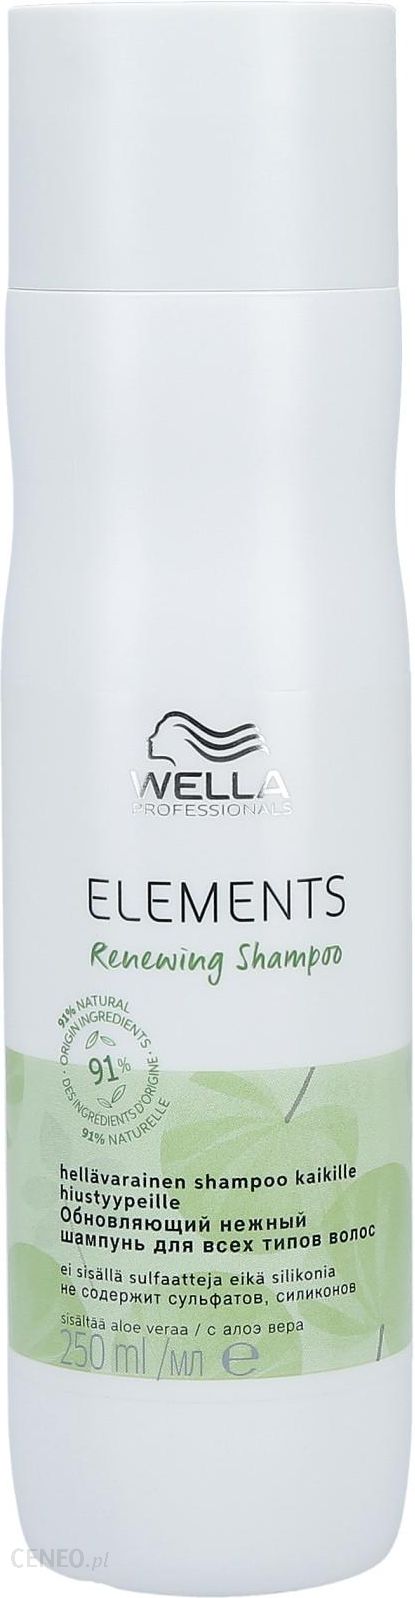 wella elements szampon cena